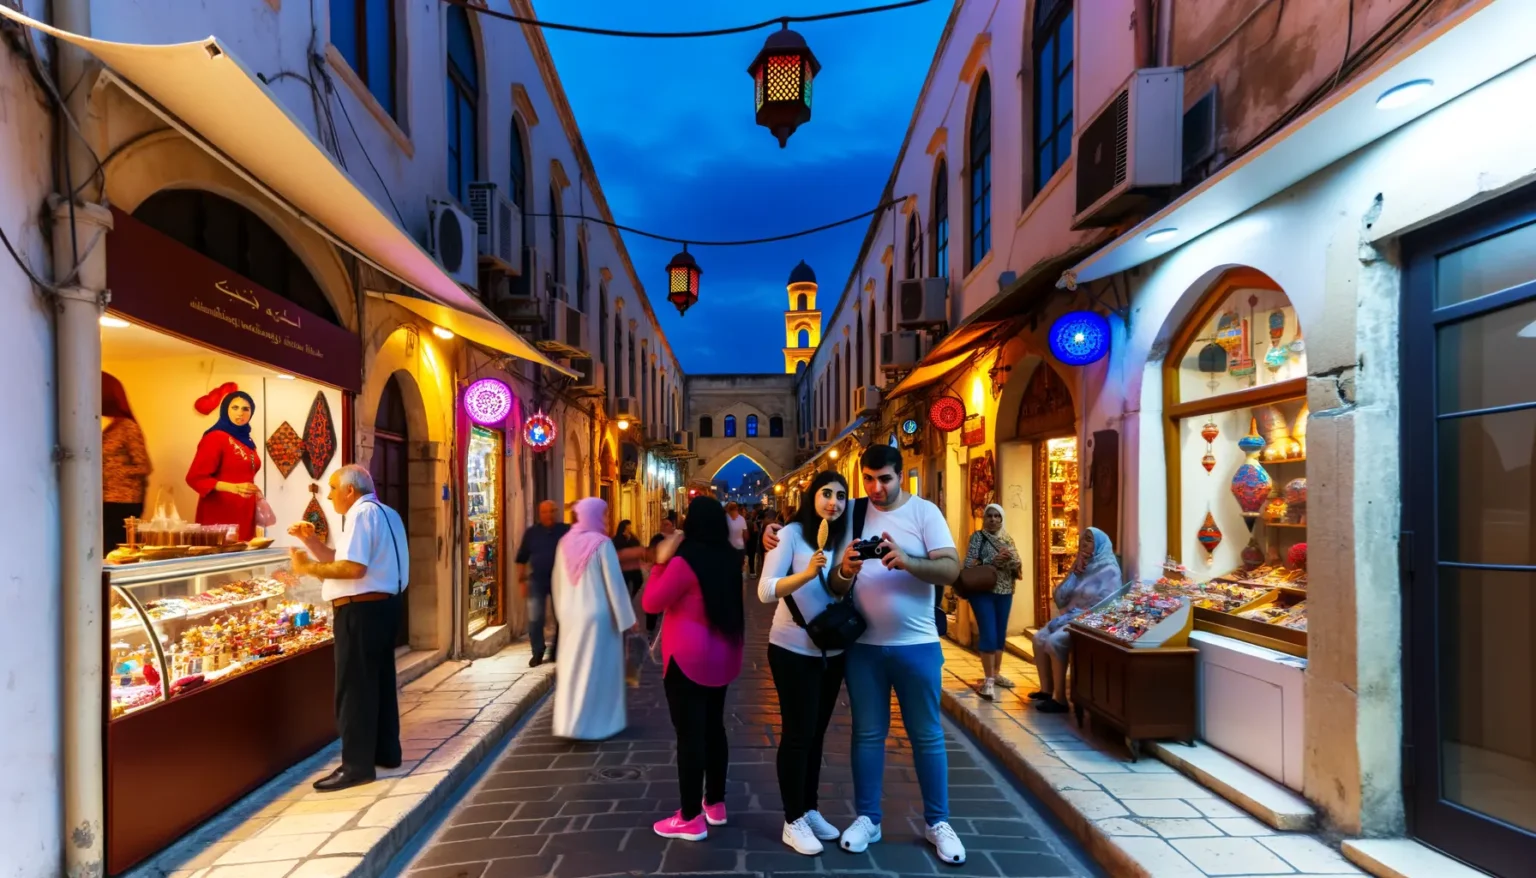 Belebte Einkaufsstraße bei Dämmerung mit Geschäften und beleuchteten Laternen, Menschen schlendern und ein Paar teilt sich ein Eis. Im Hintergrund ist ein Minarett bei blauer Abendstimmung zu sehen.